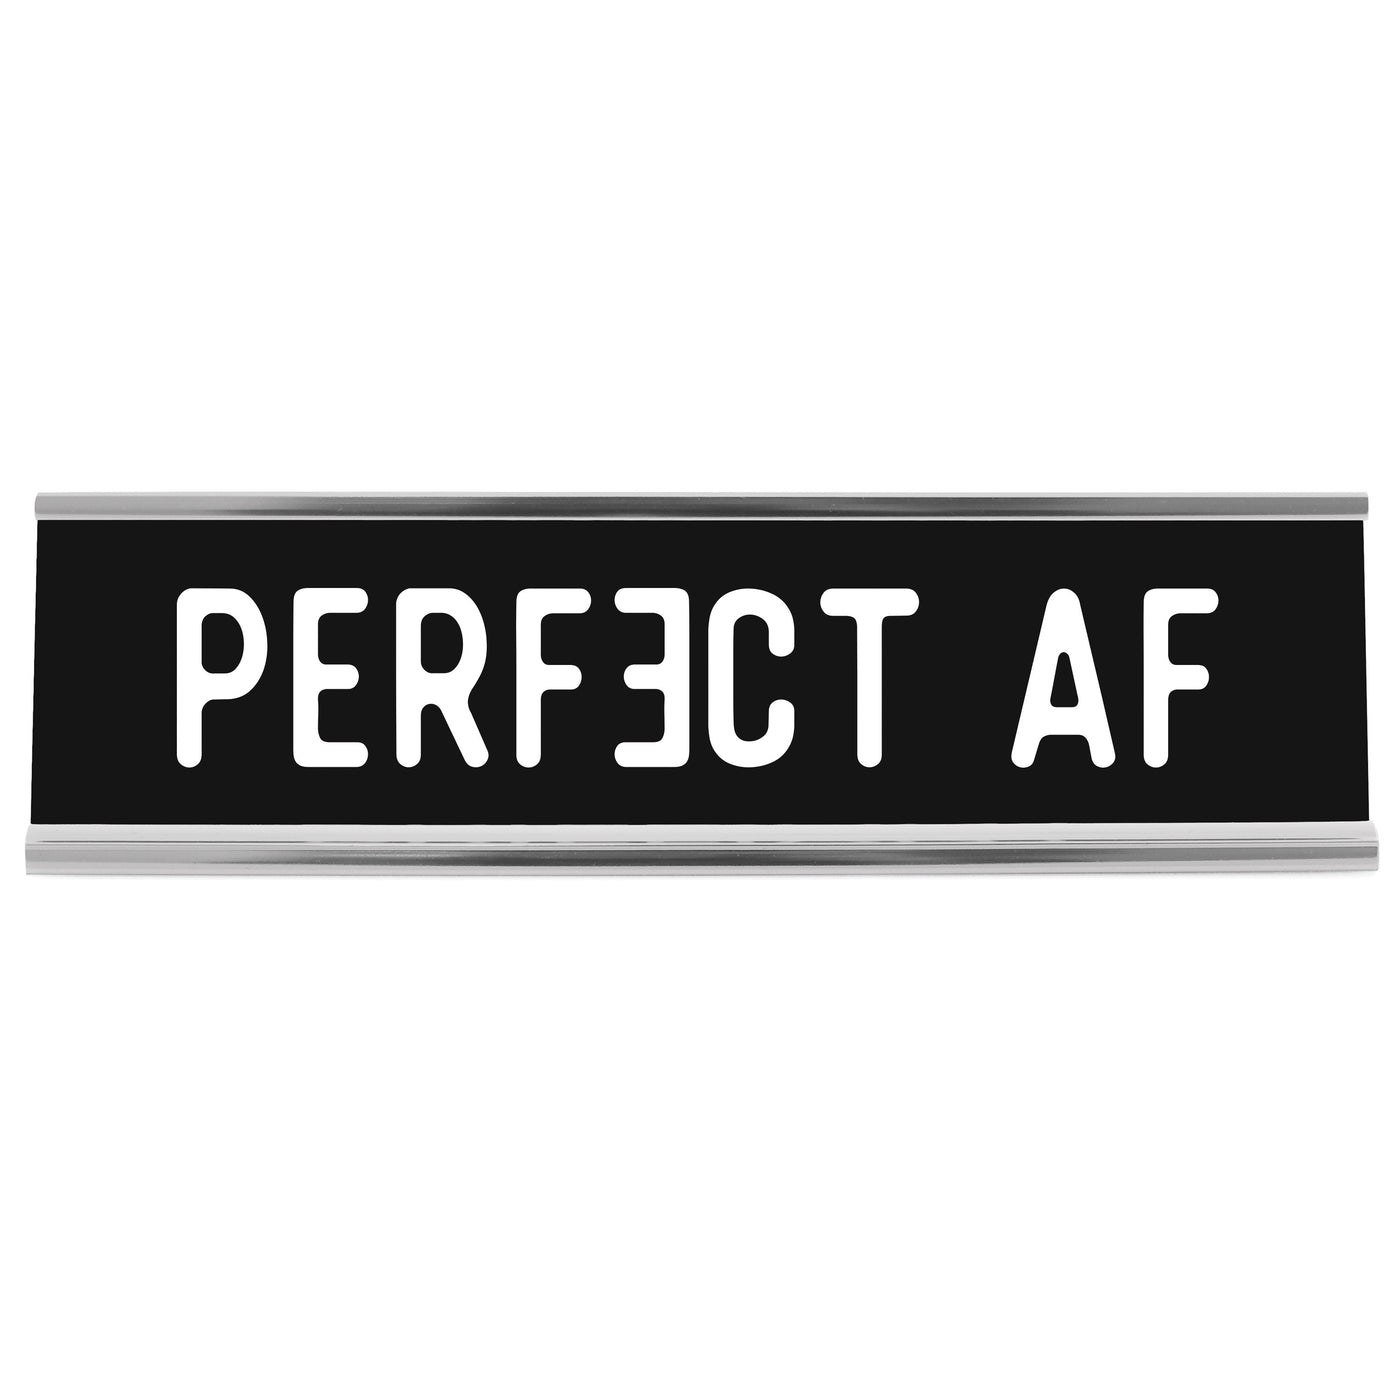 Perfect AF Desk Sign